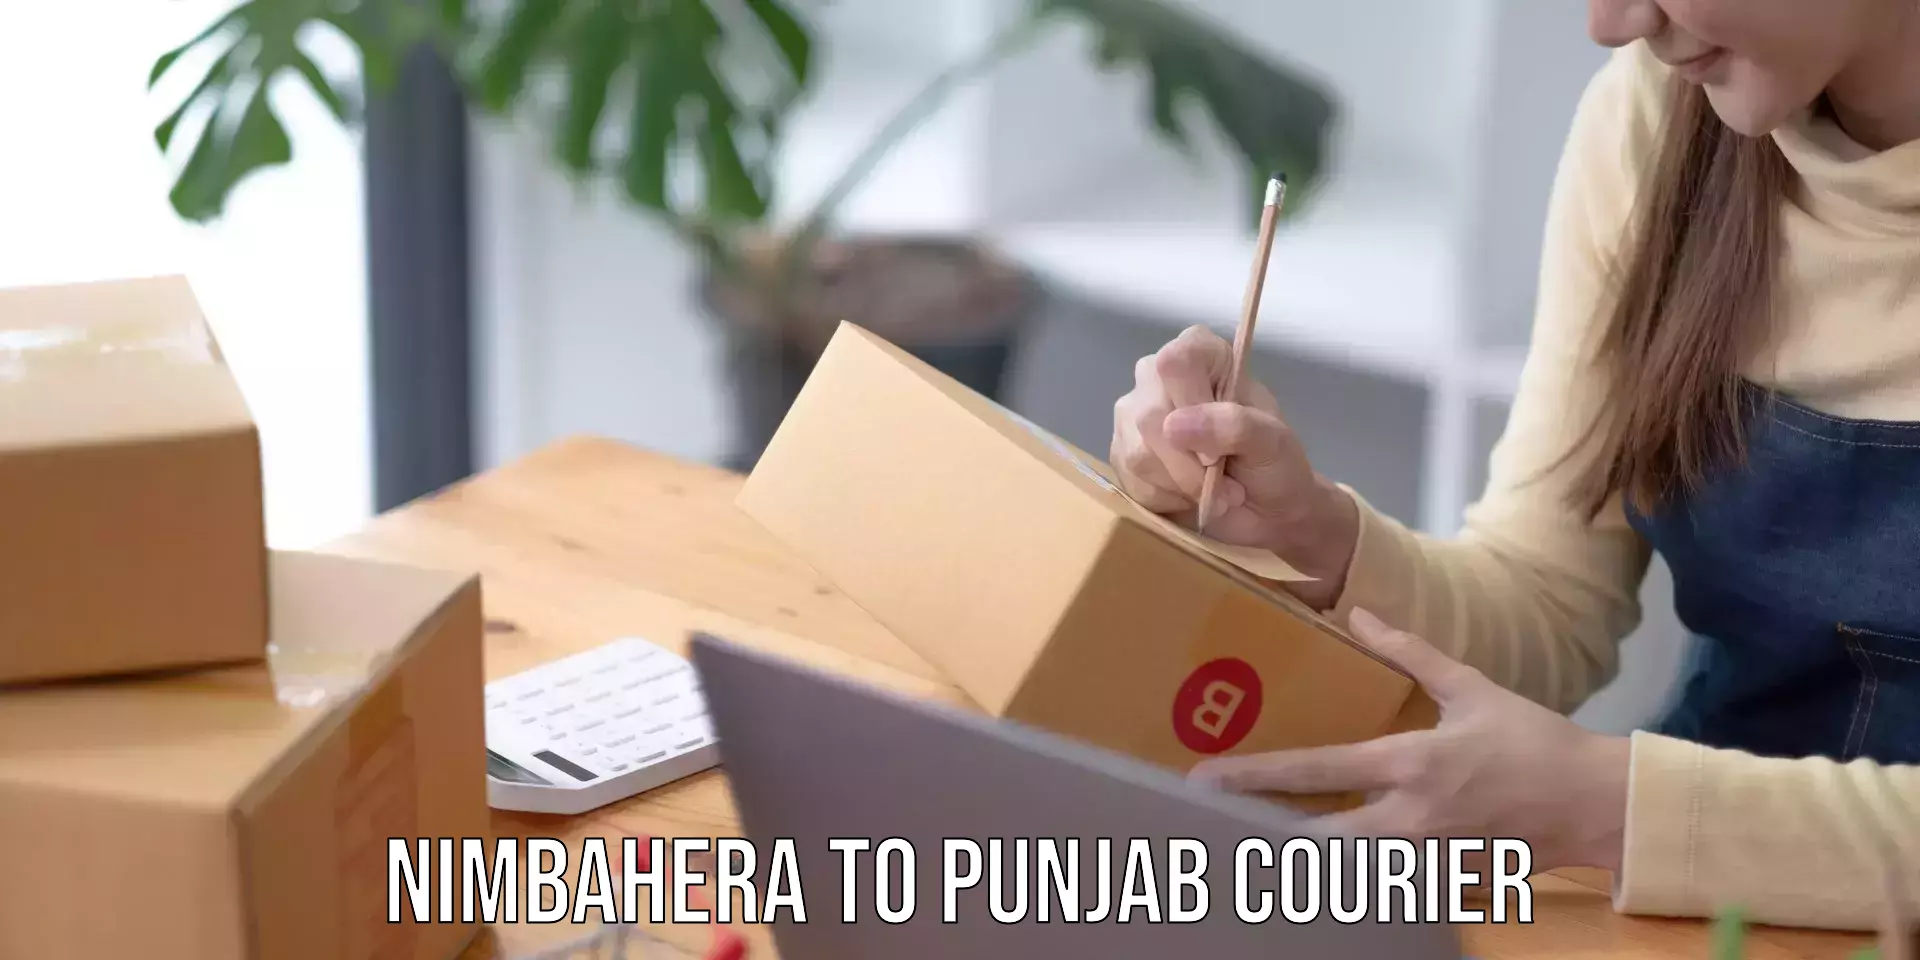 Courier tracking online Nimbahera to Central University of Punjab Bathinda